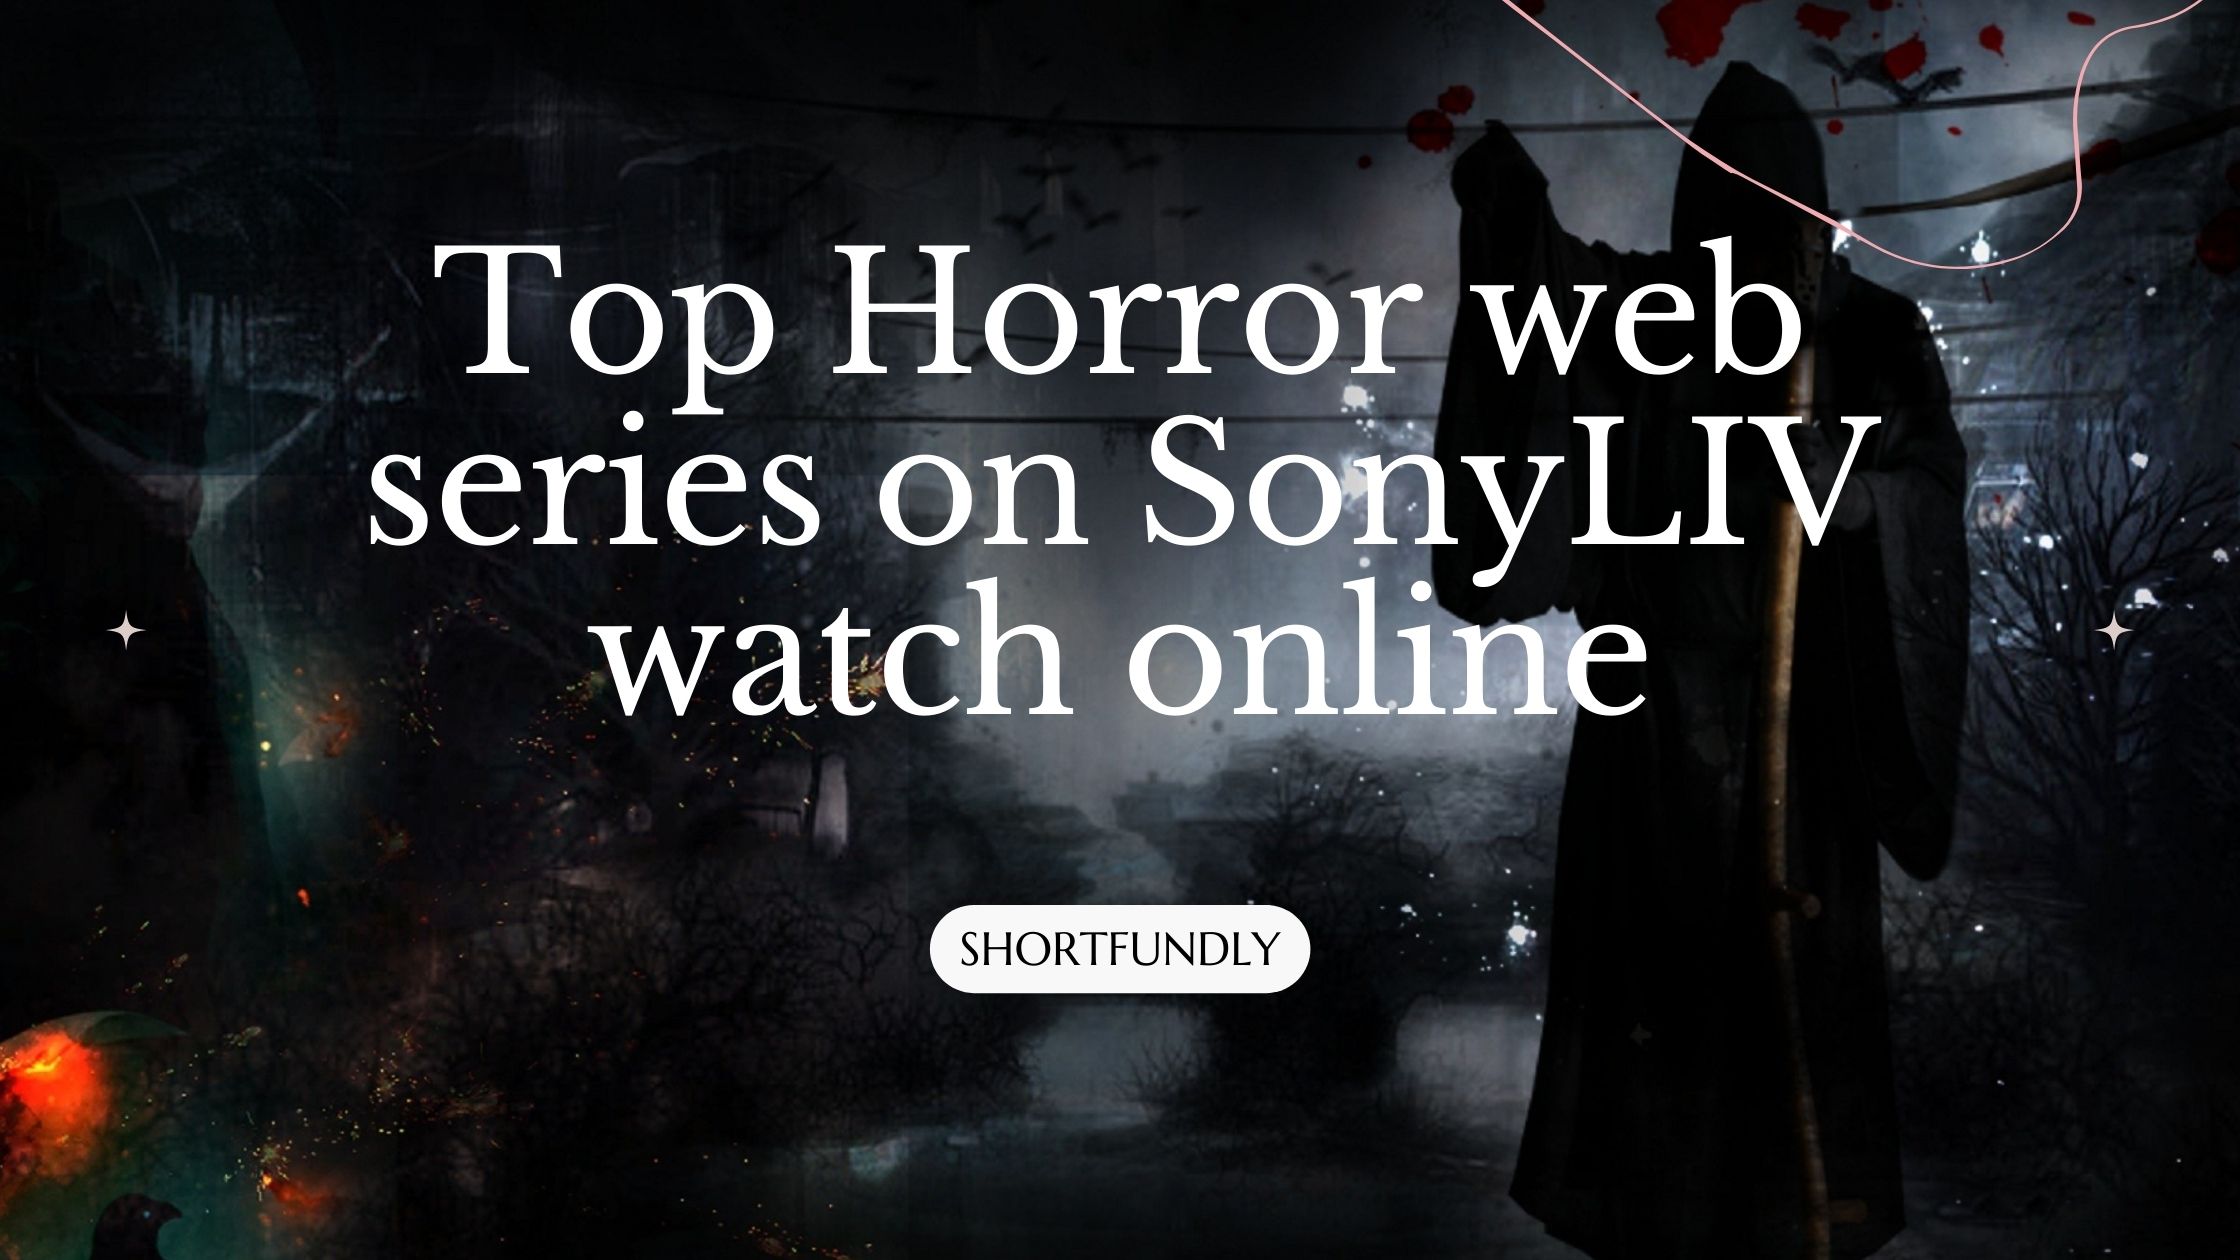 Top Horror web series on SonyLIV watch online